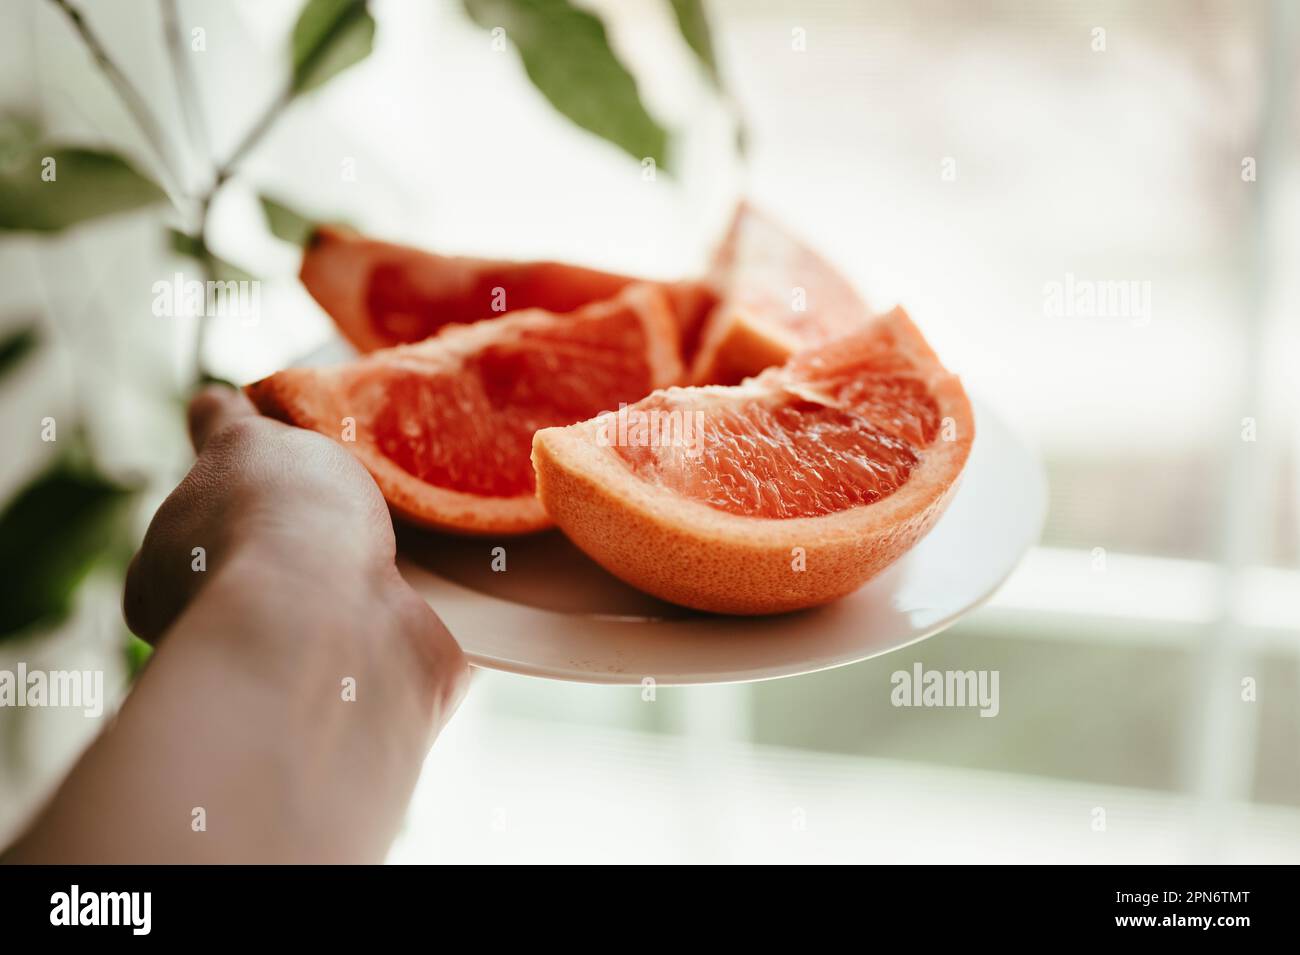 Die Hand einer Person, die eine weiße Platte mit roten, gesunden Grapefruitscheiben hält Stockfoto